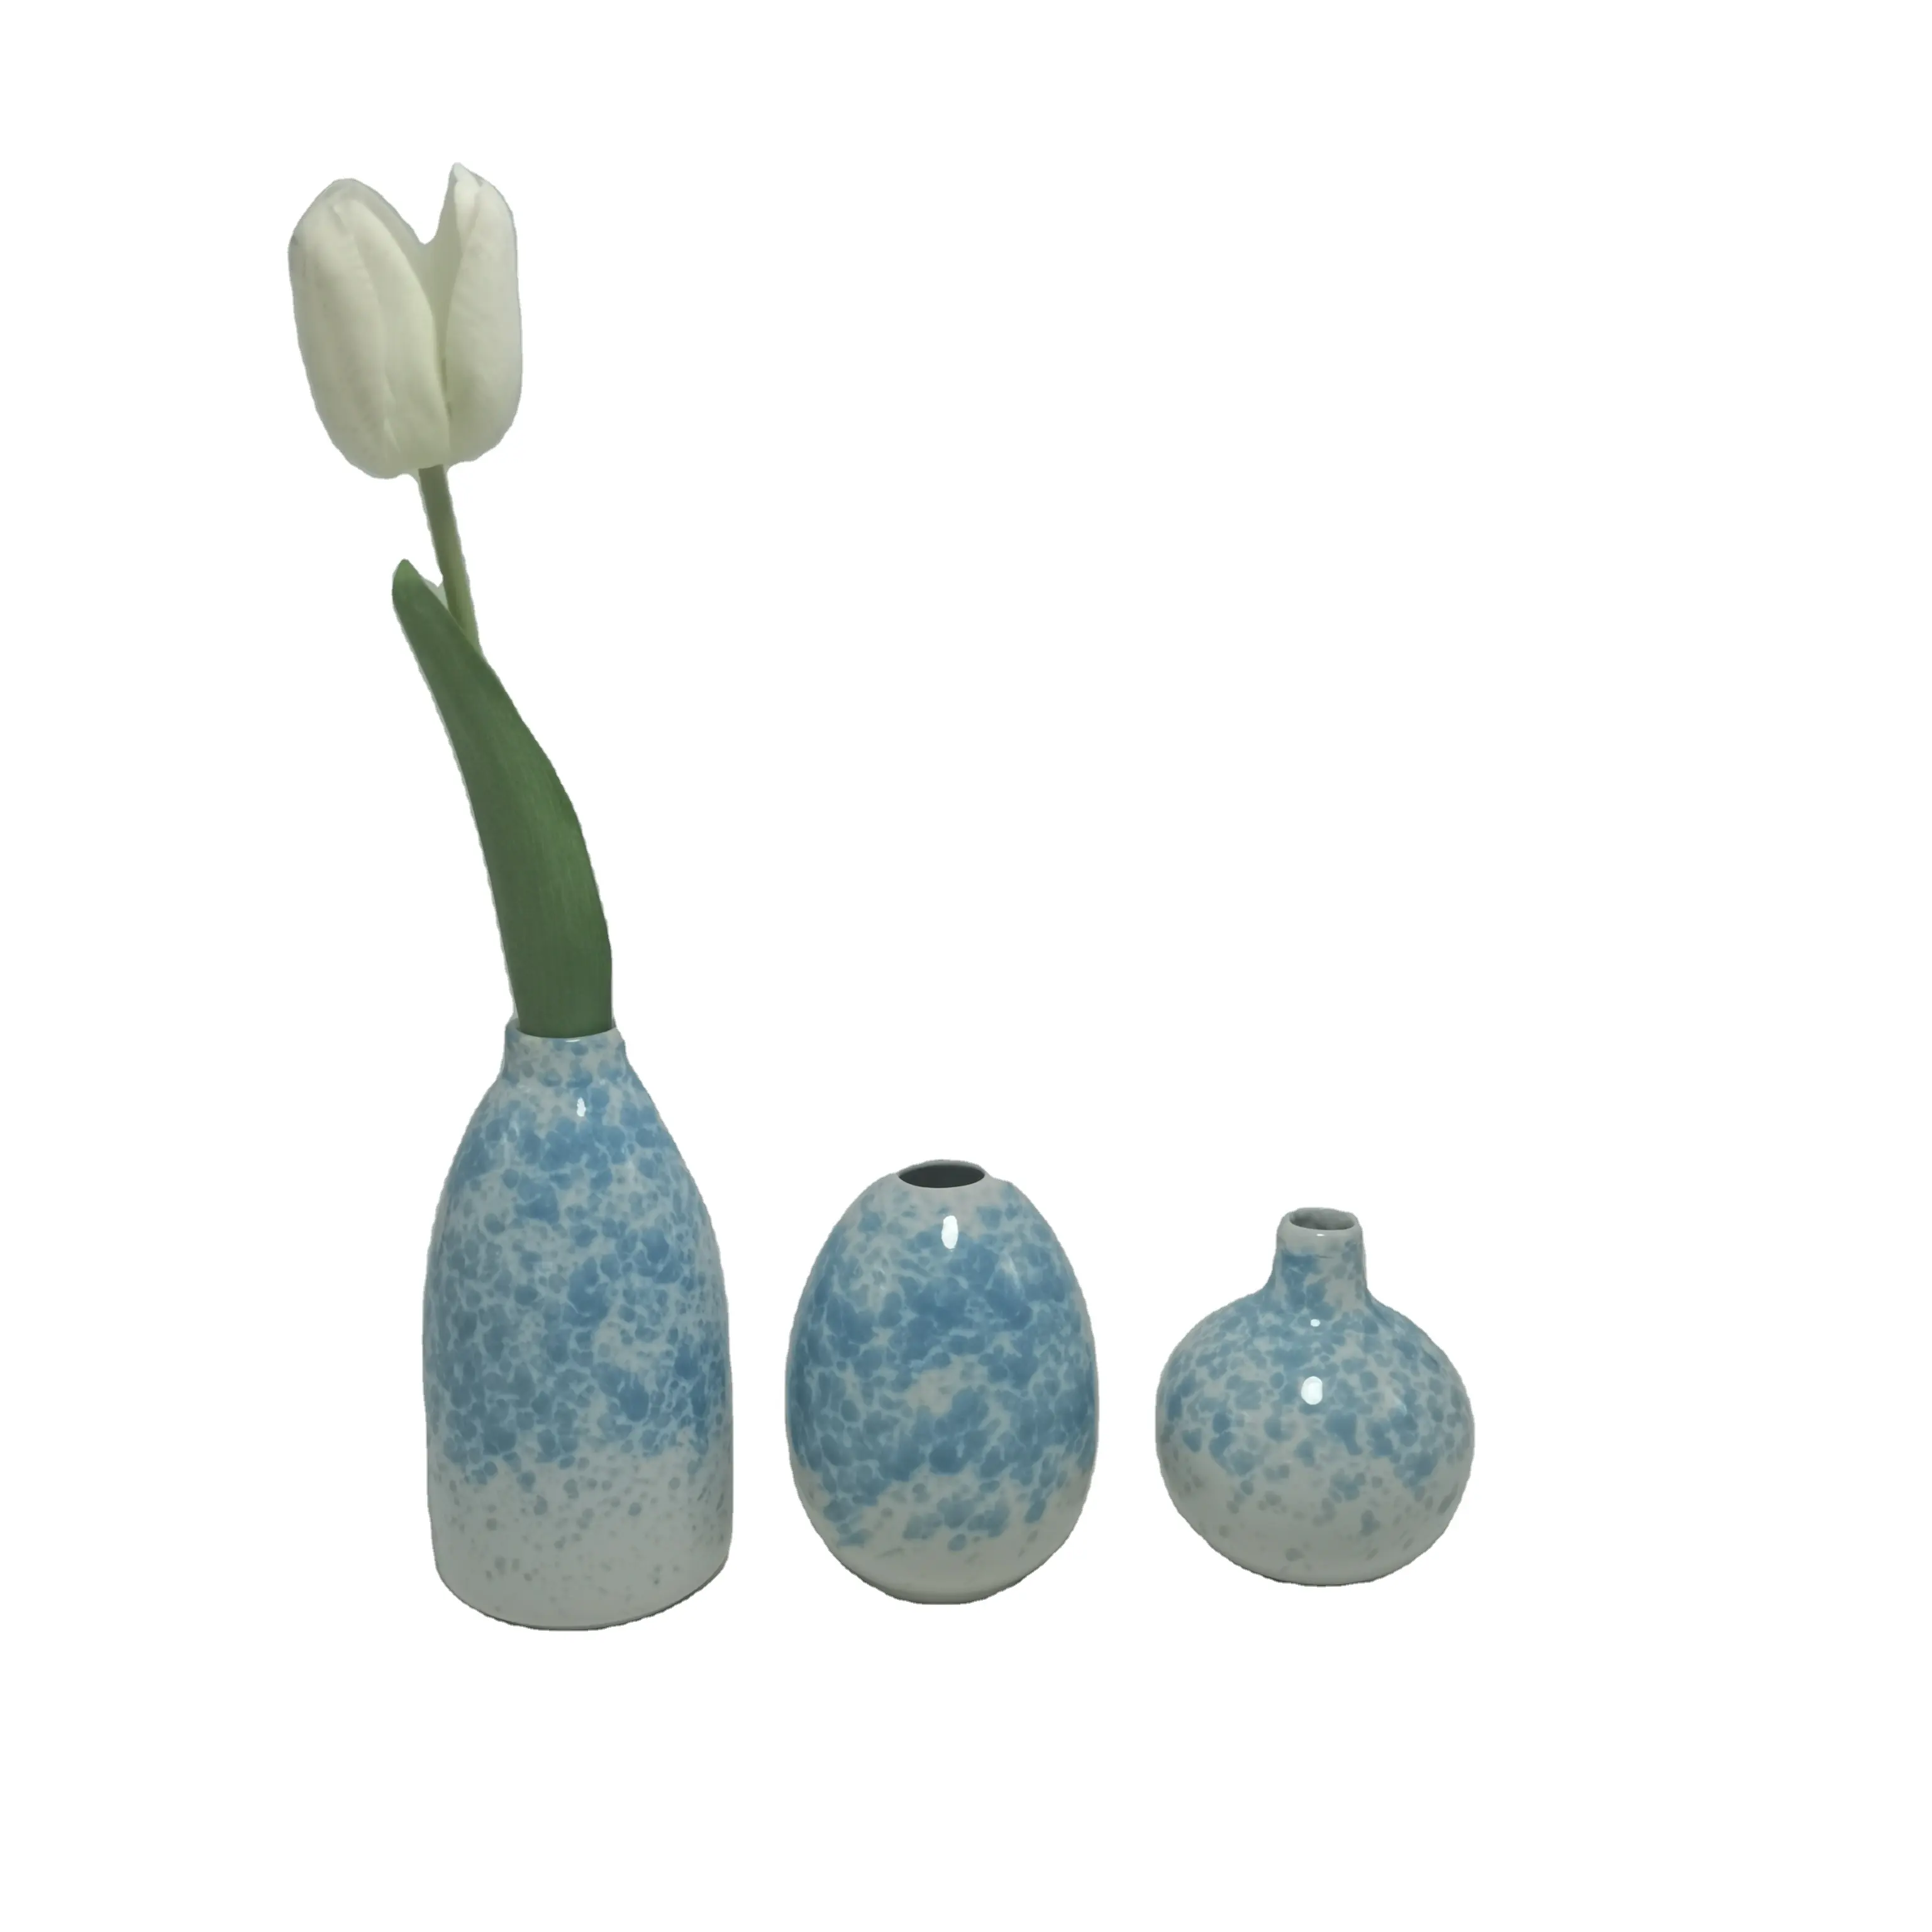 Fabrika düz saç nokta mal avrupa amerikan tarzı seramik vazolar ev dekorasyon düzenlemek çiçekler porselen şişe